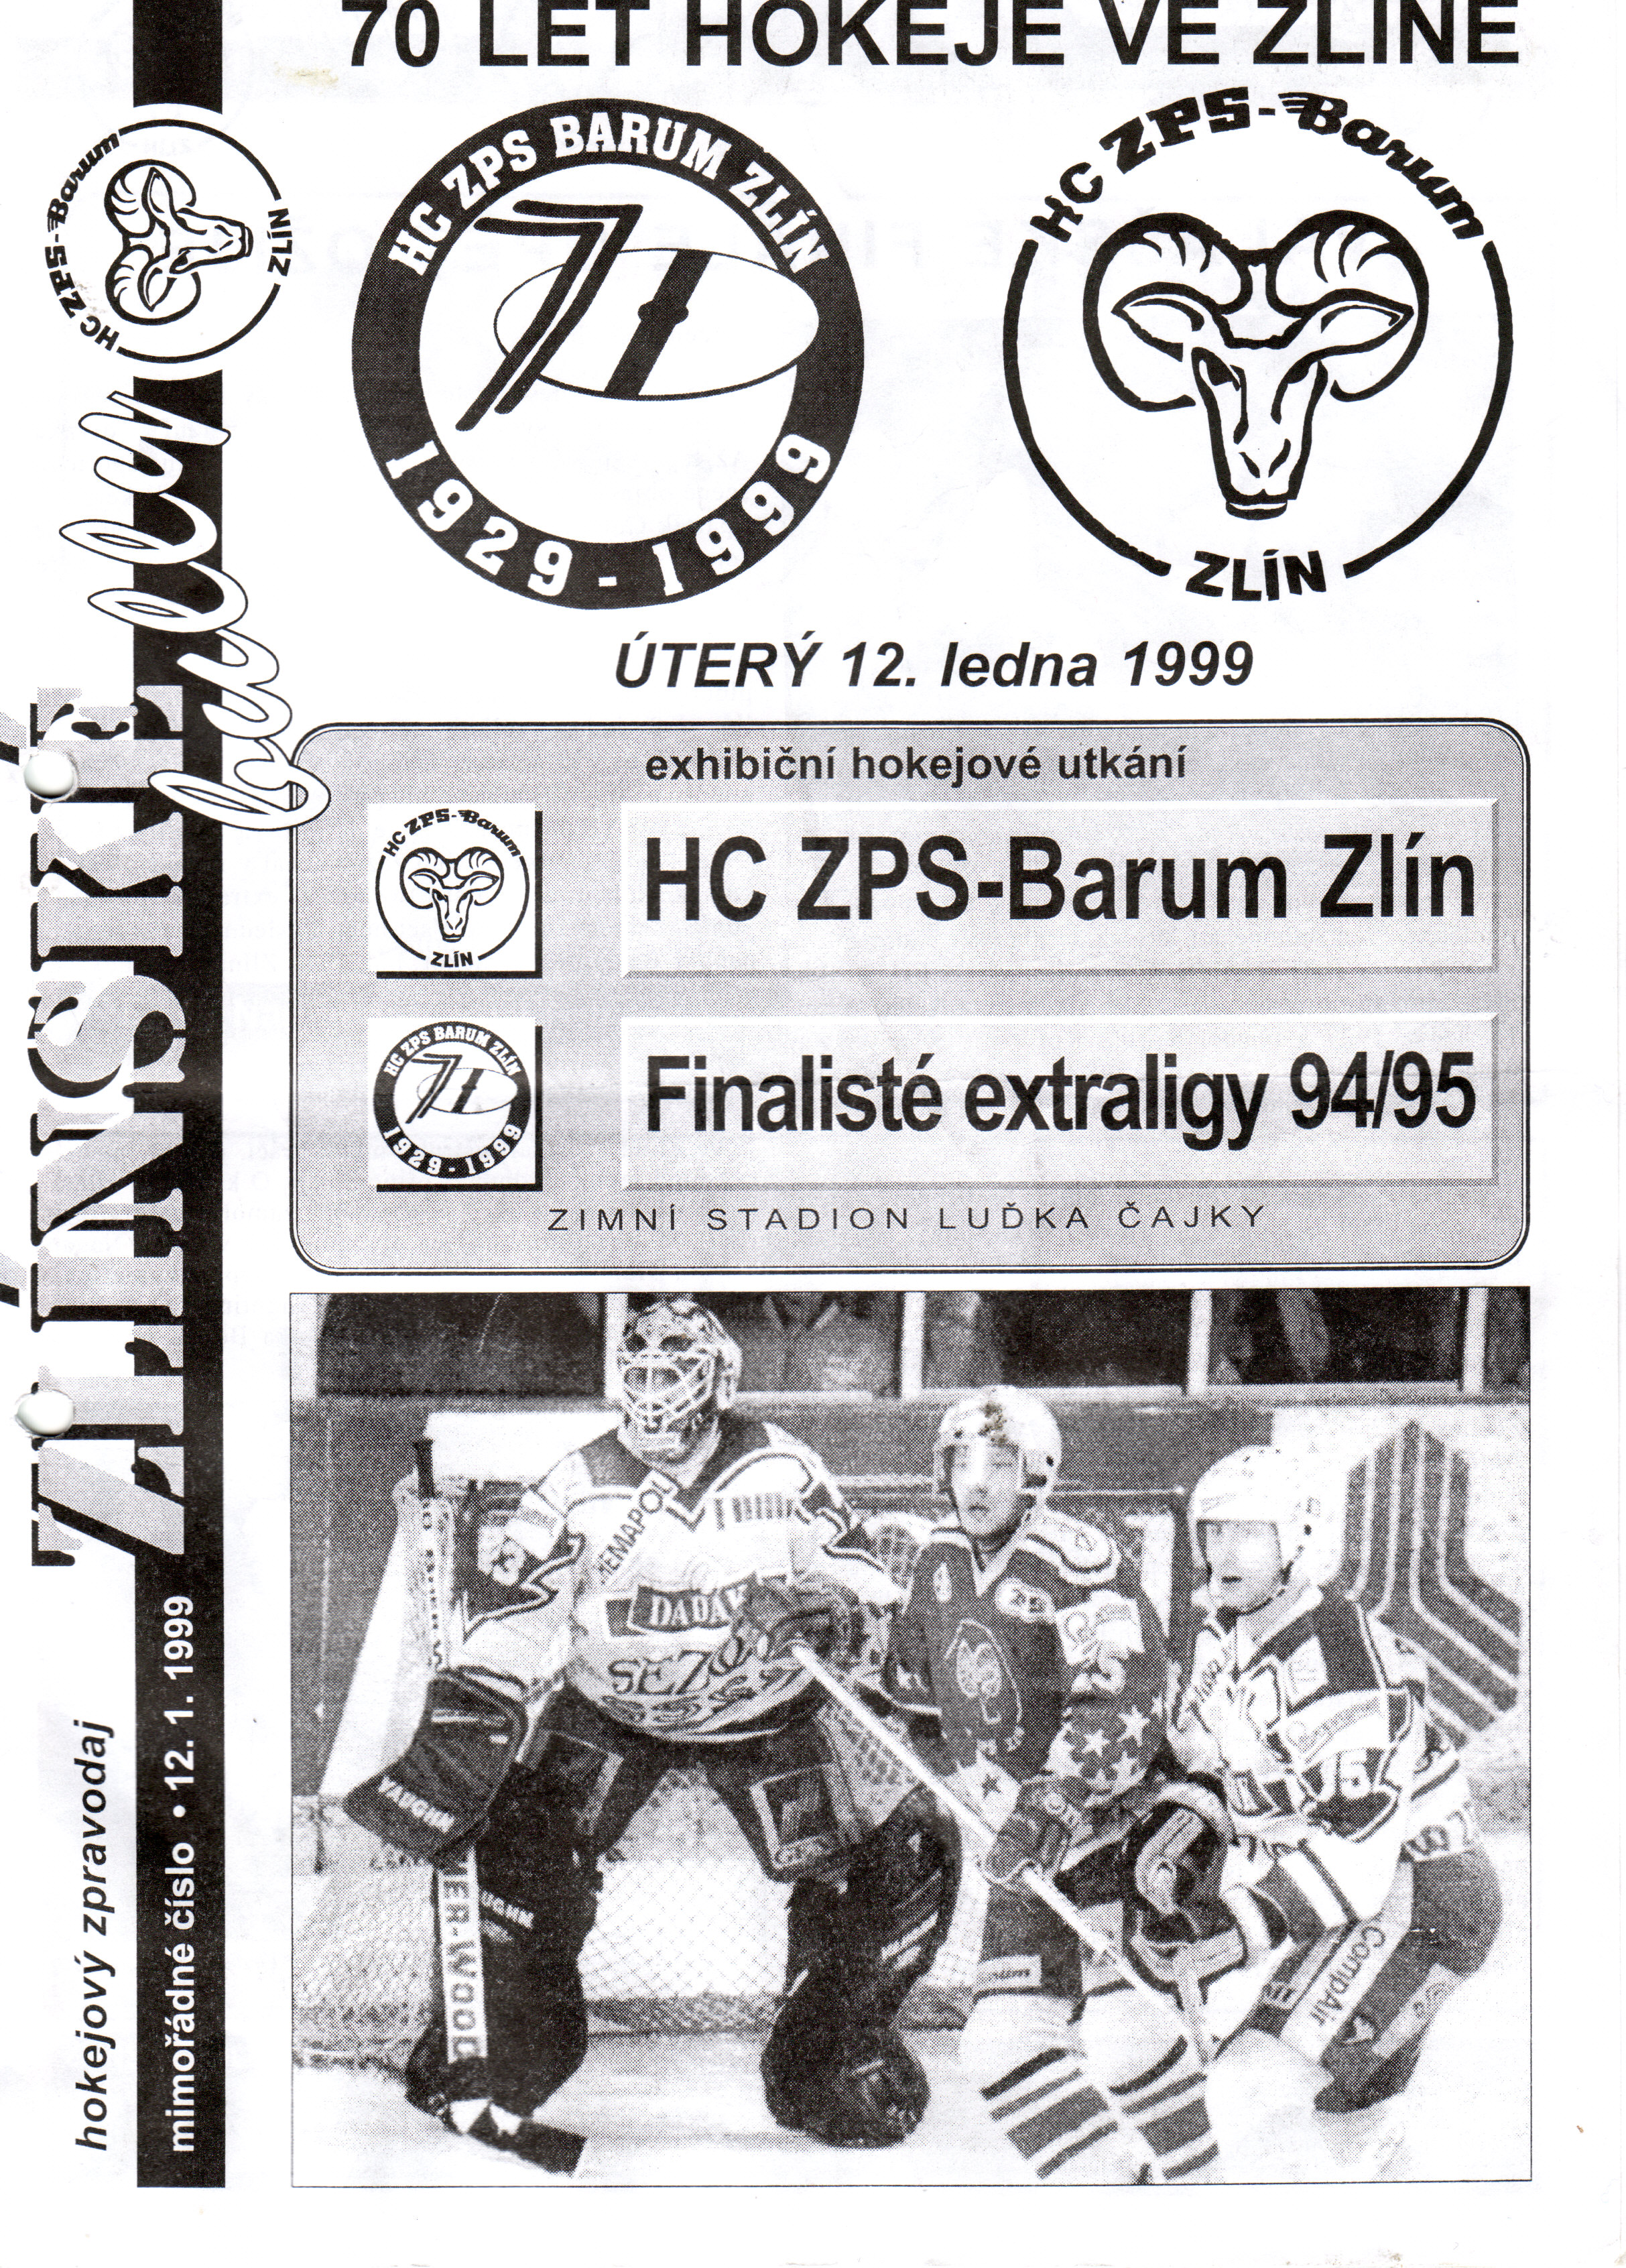 zlínská bully 70 let hokeje 1998-99.jpg